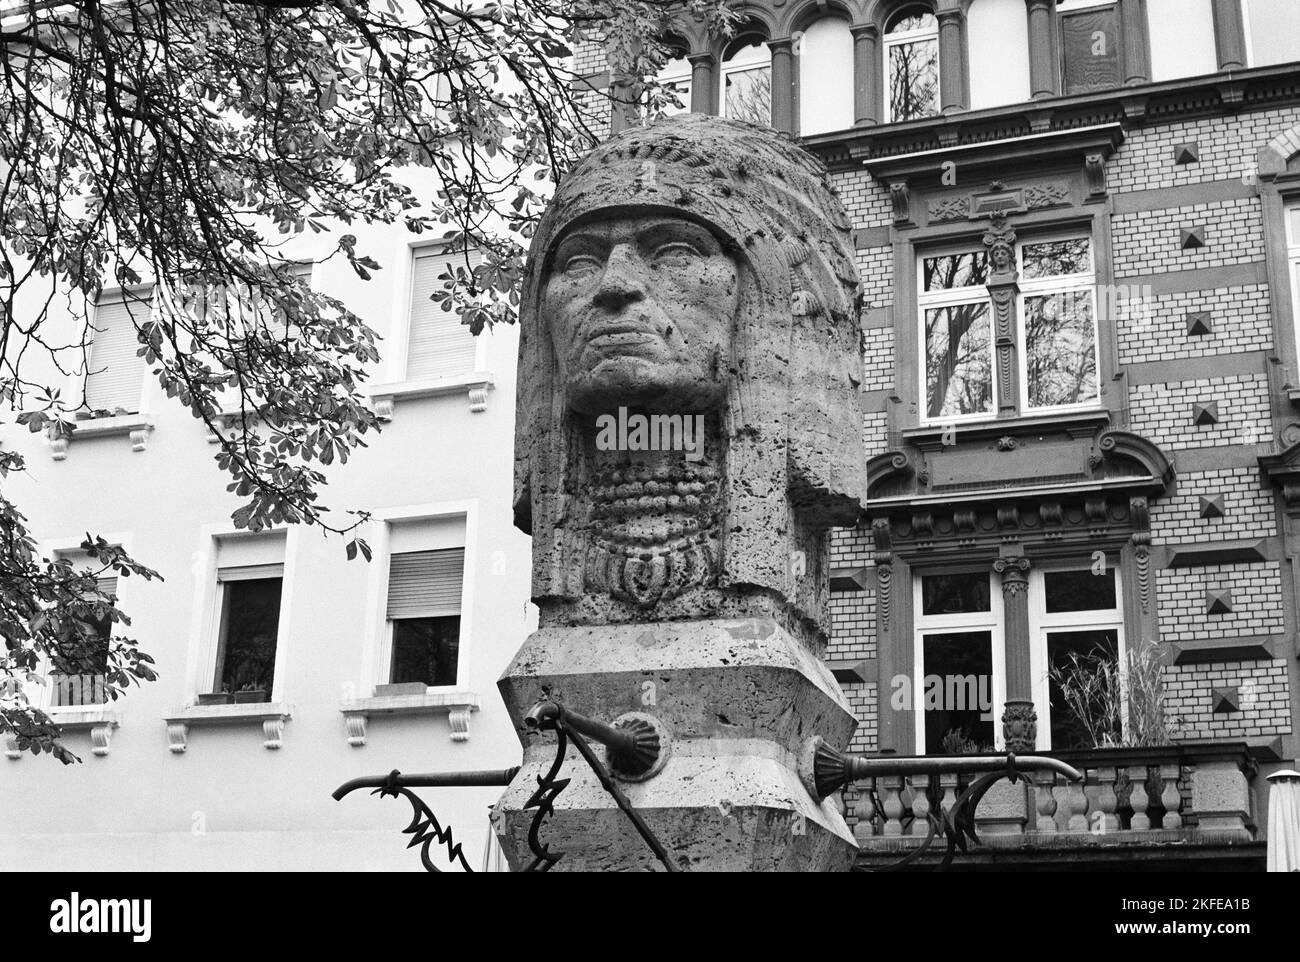 Der Indianerbrunnen ist ein 1924–1927 errichteter Brunnen mit einer doppelgesichtigen Indianerskulptur auf dem zentralen Werderplatz in Karlsruhe. Foto Stock